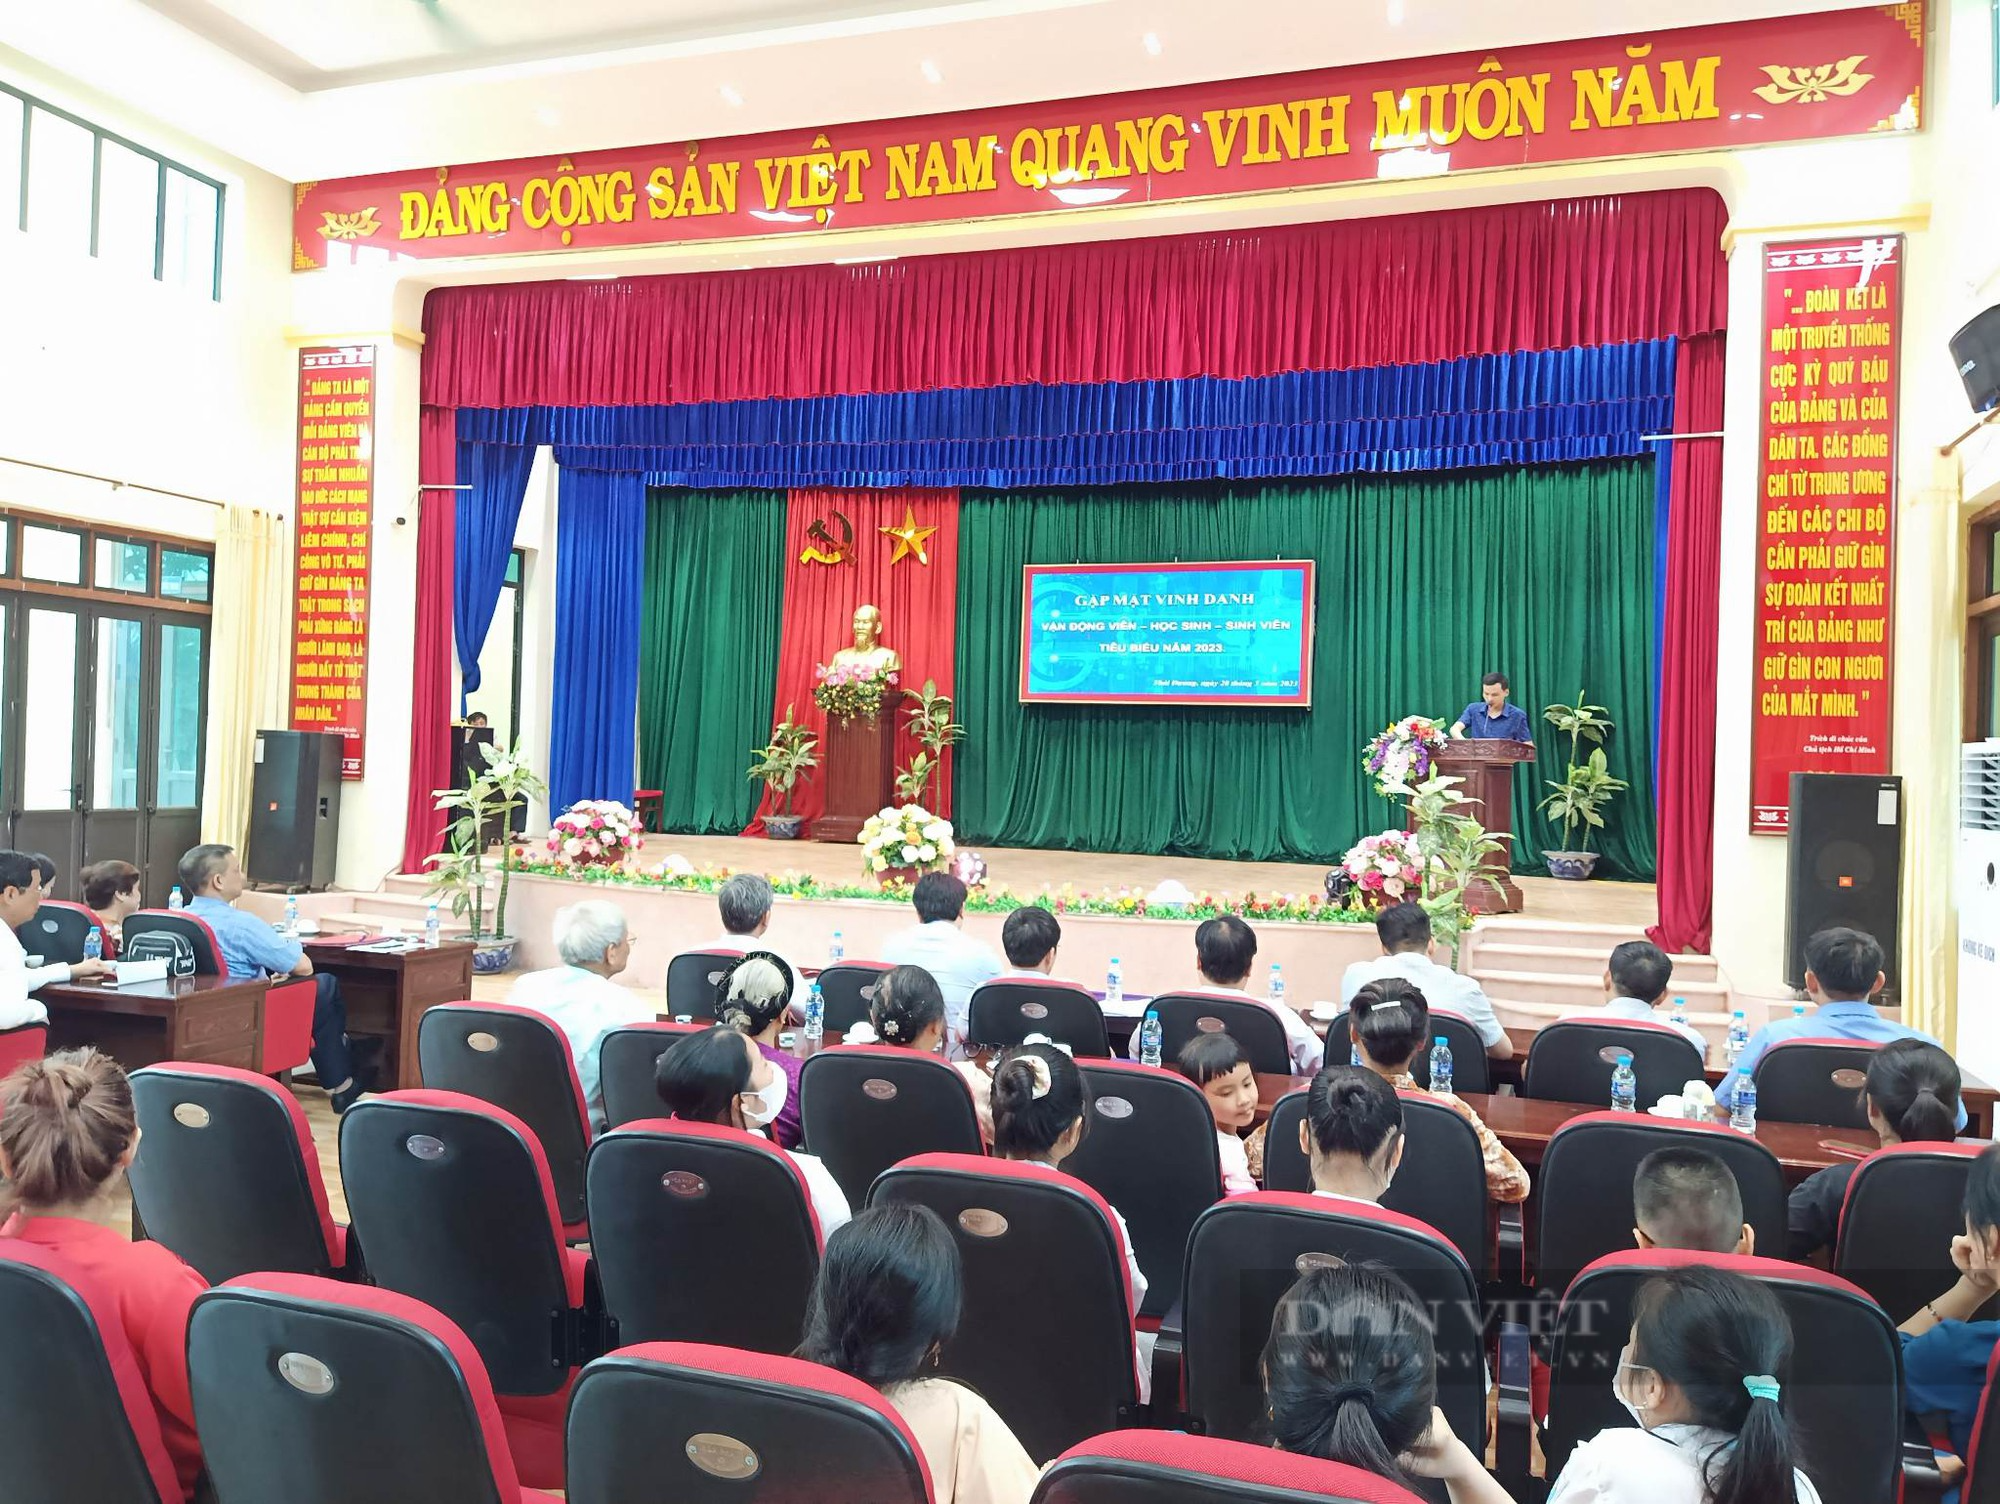 Kình ngư giành 3 HCV Sea Games 32 Phạm Thị Thu được vinh danh tại quê nhà  - Ảnh 3.